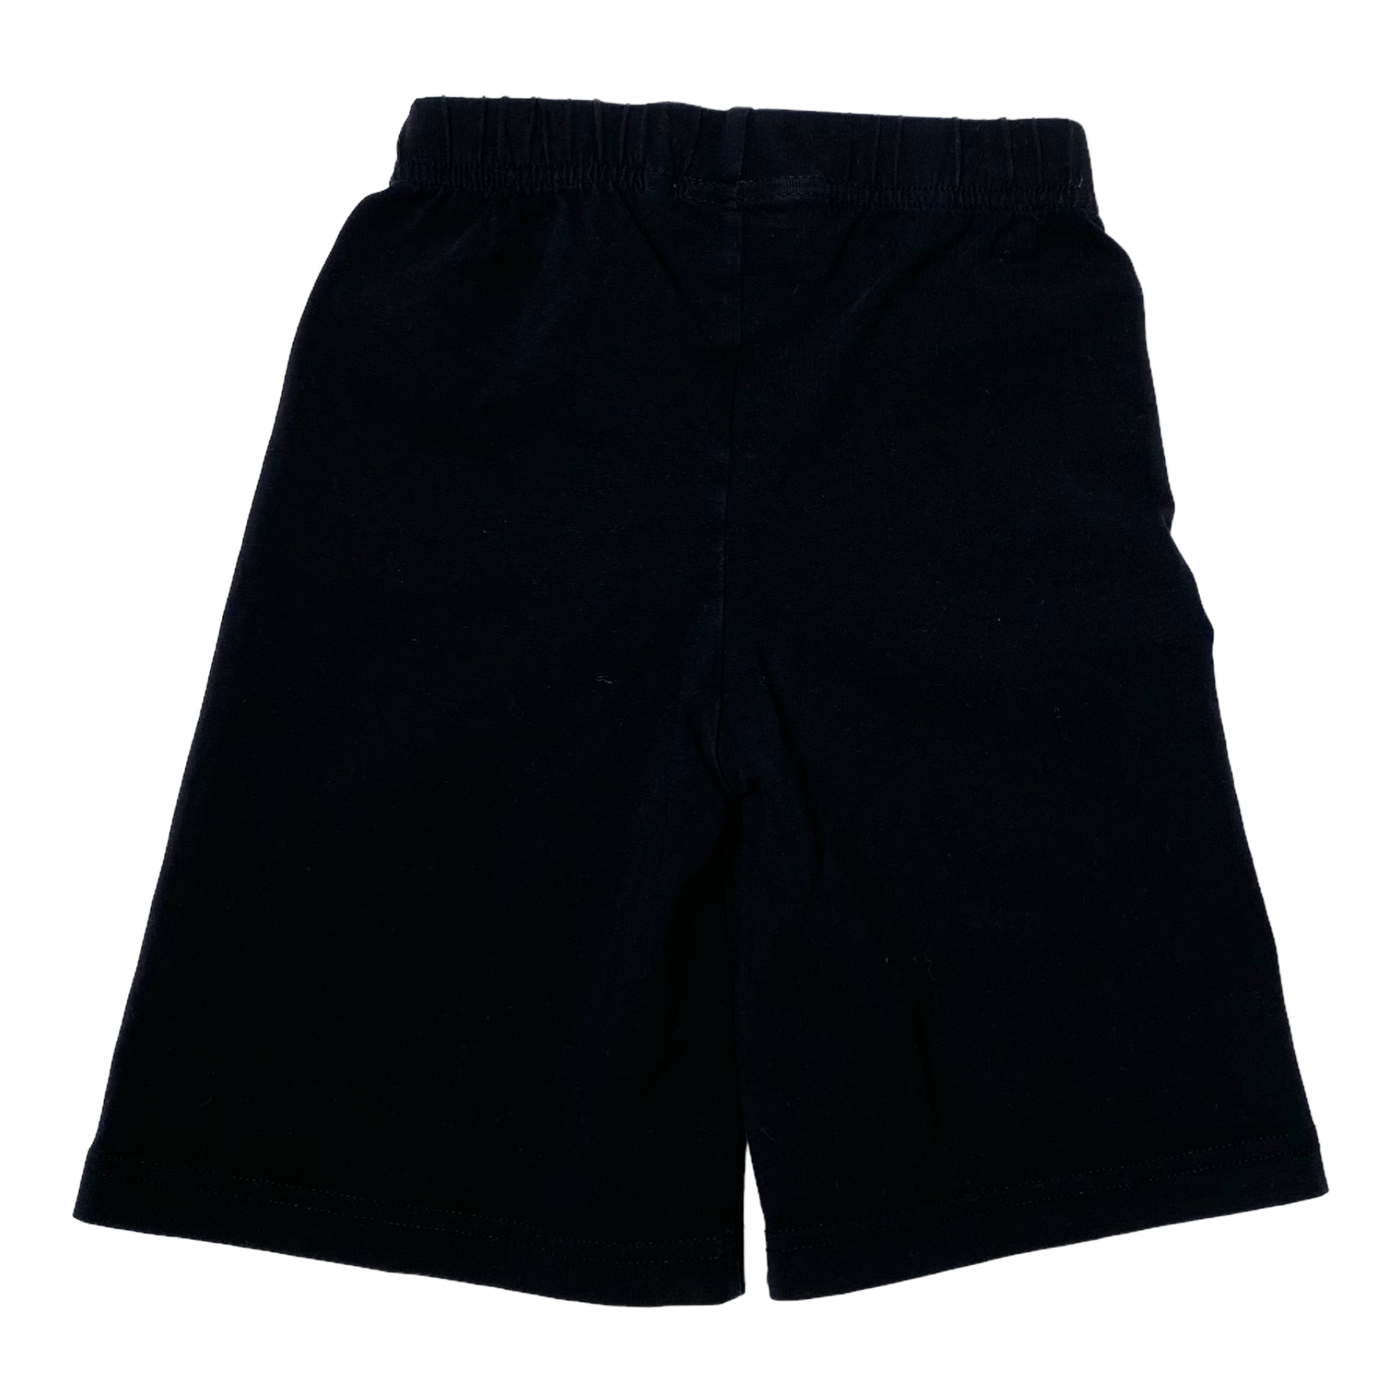 Kaiko shorts, black | 86/92cm